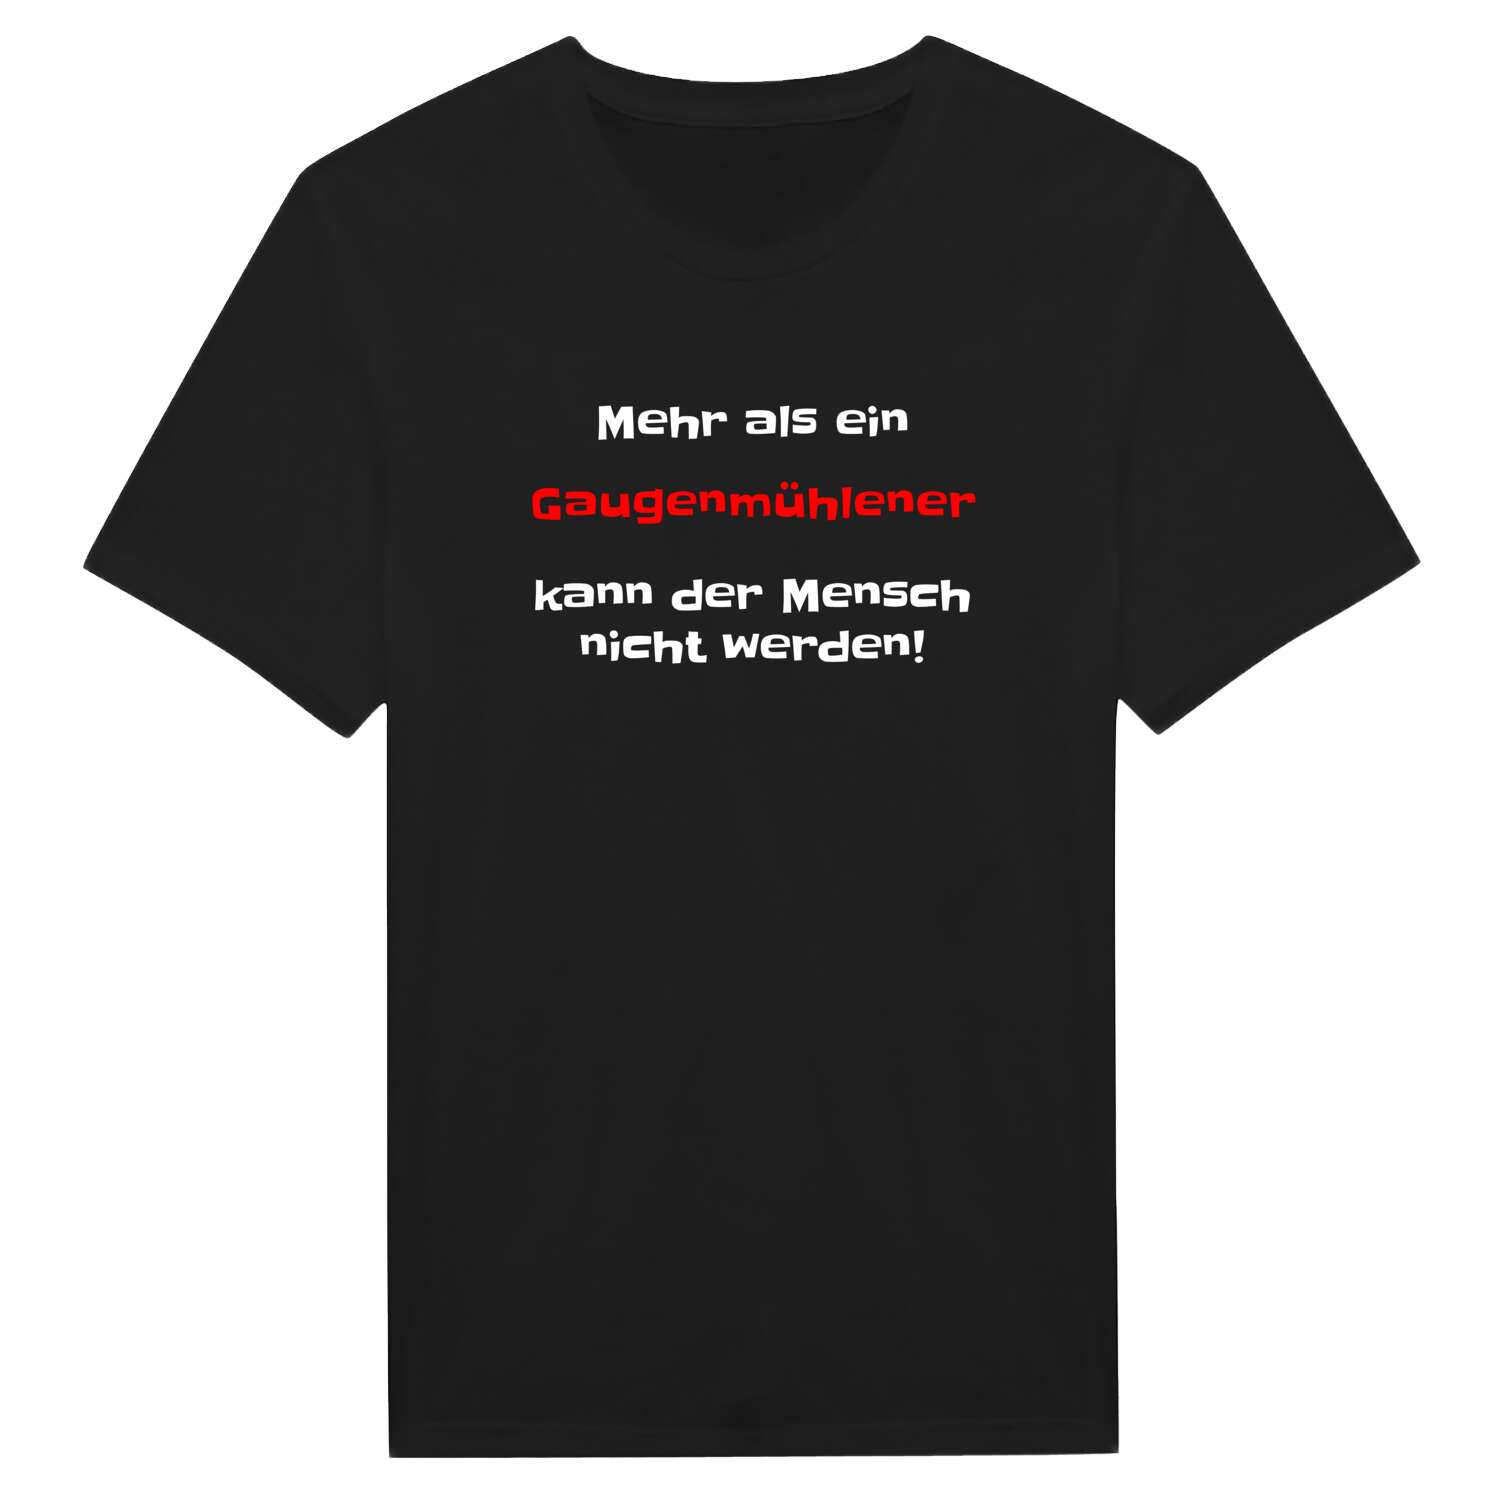 Gaugenmühle T-Shirt »Mehr als ein«